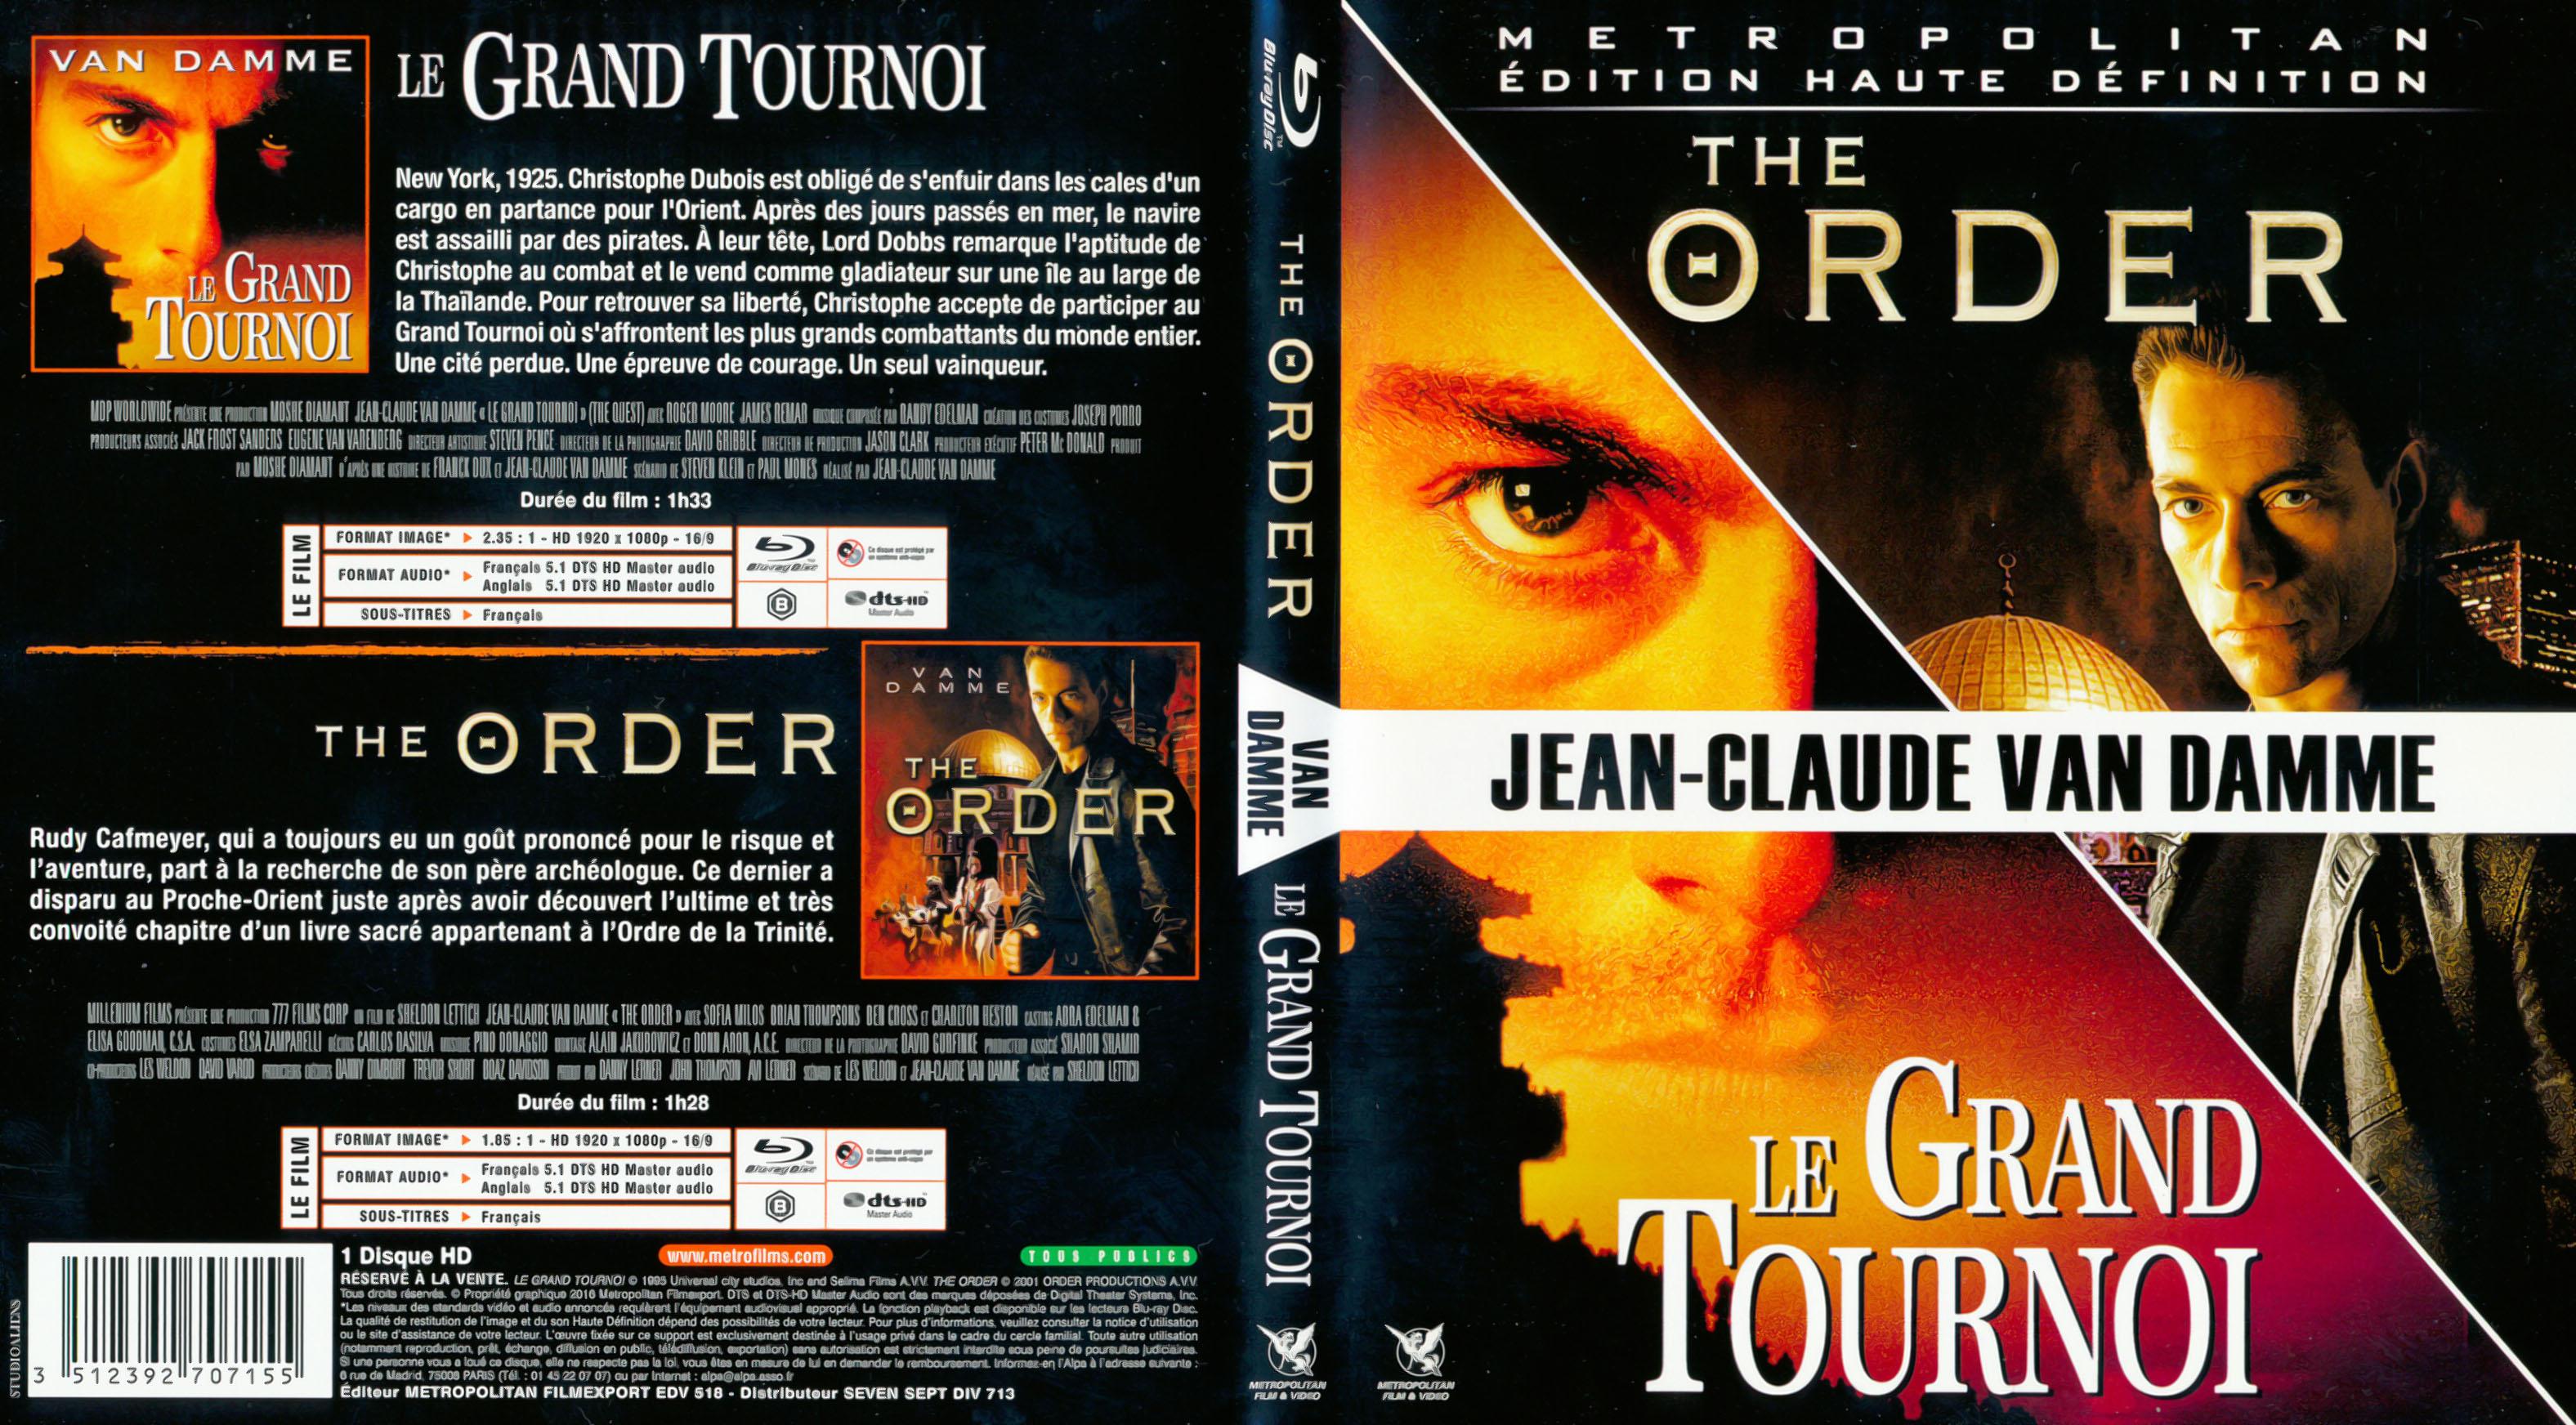 Jaquette DVD Le Grand Tournoi + The Order (BLU RAY)